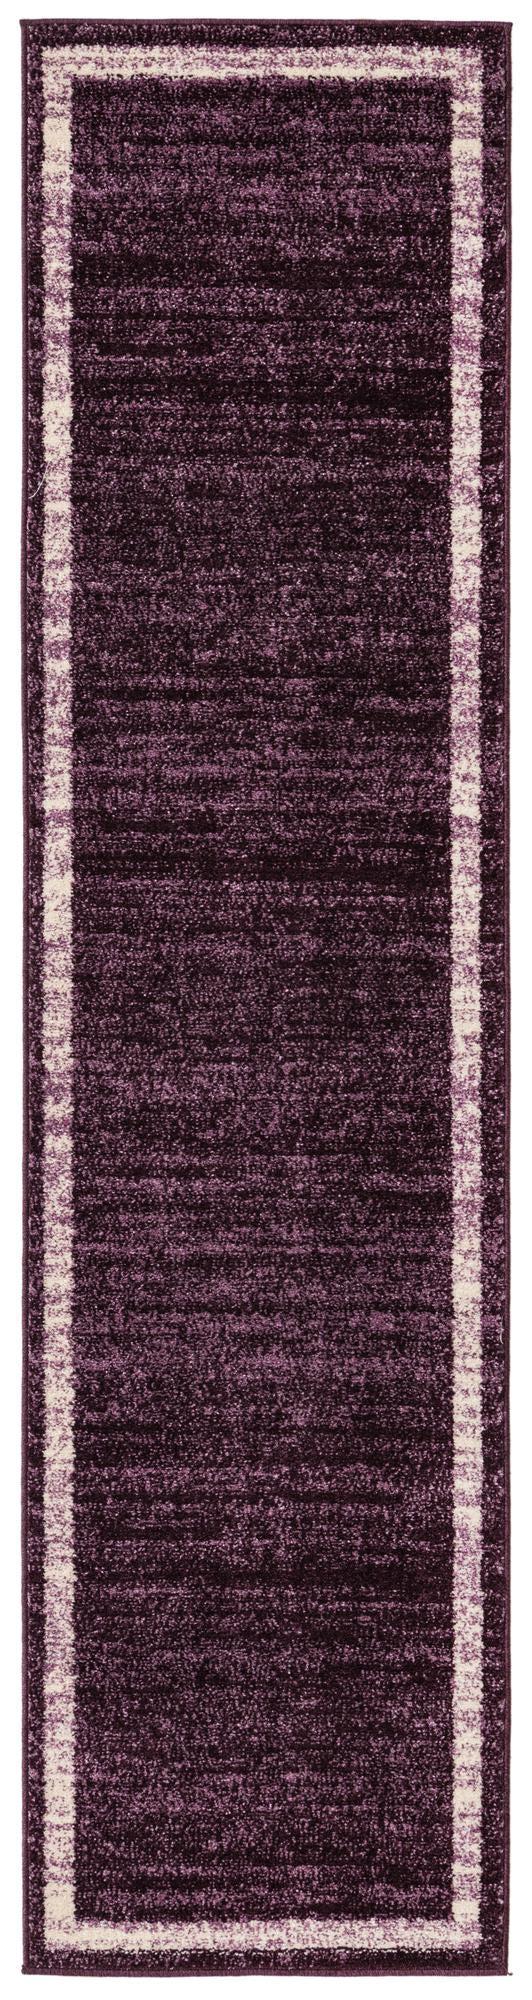 unique loom del mar contemporary area rug collection